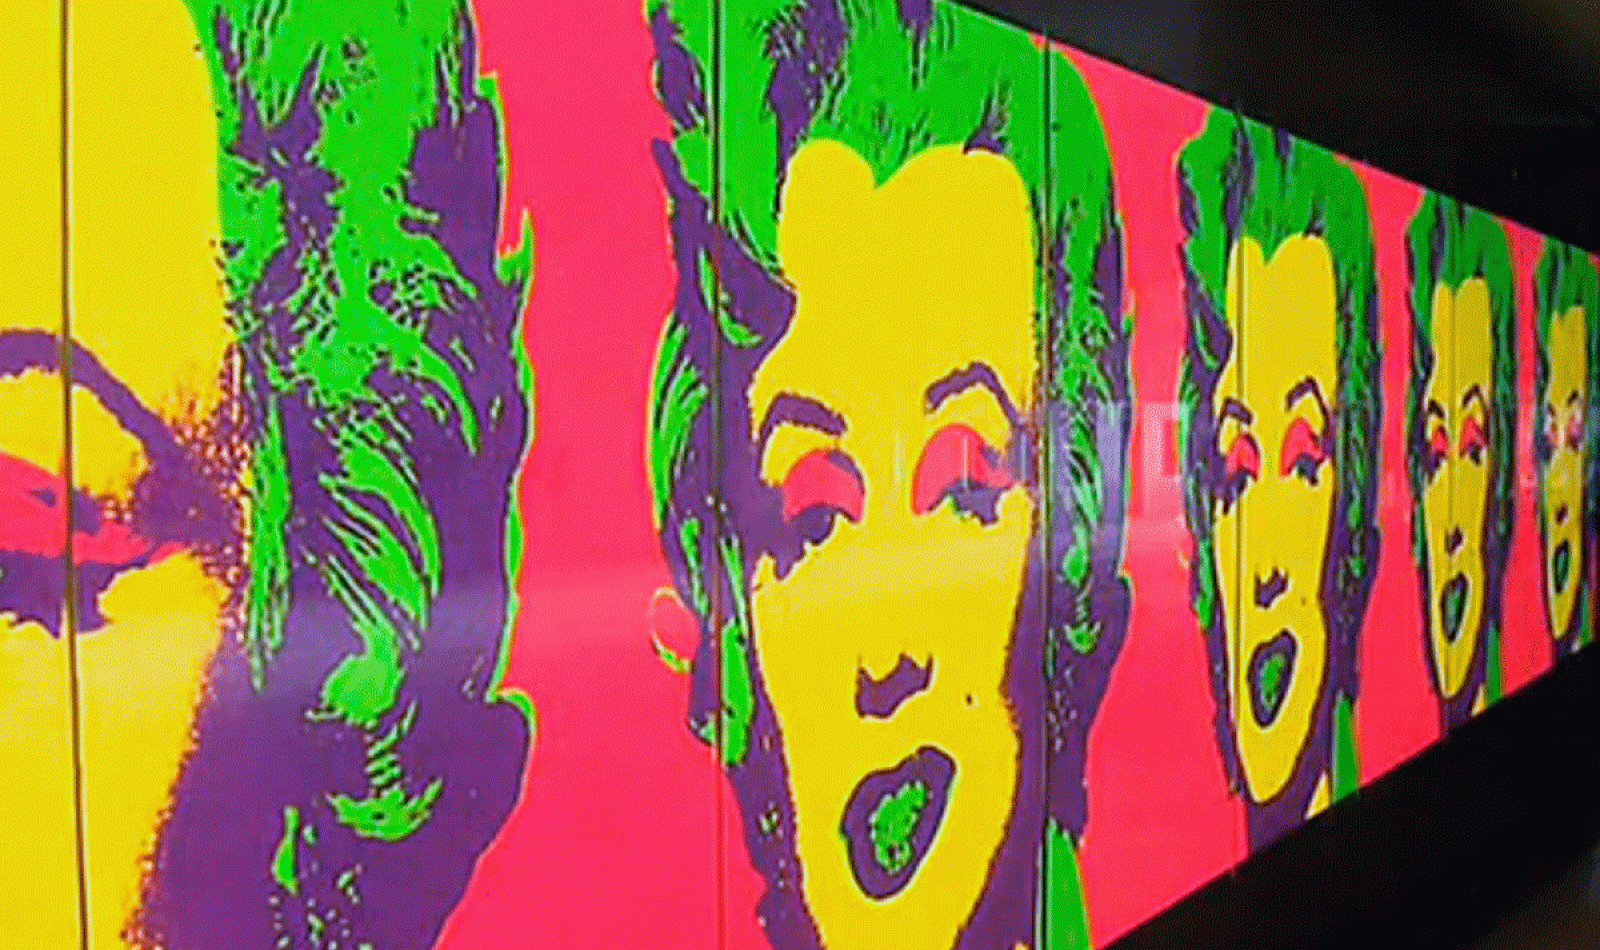 La aventura del saber - Warhol El arte mecánico